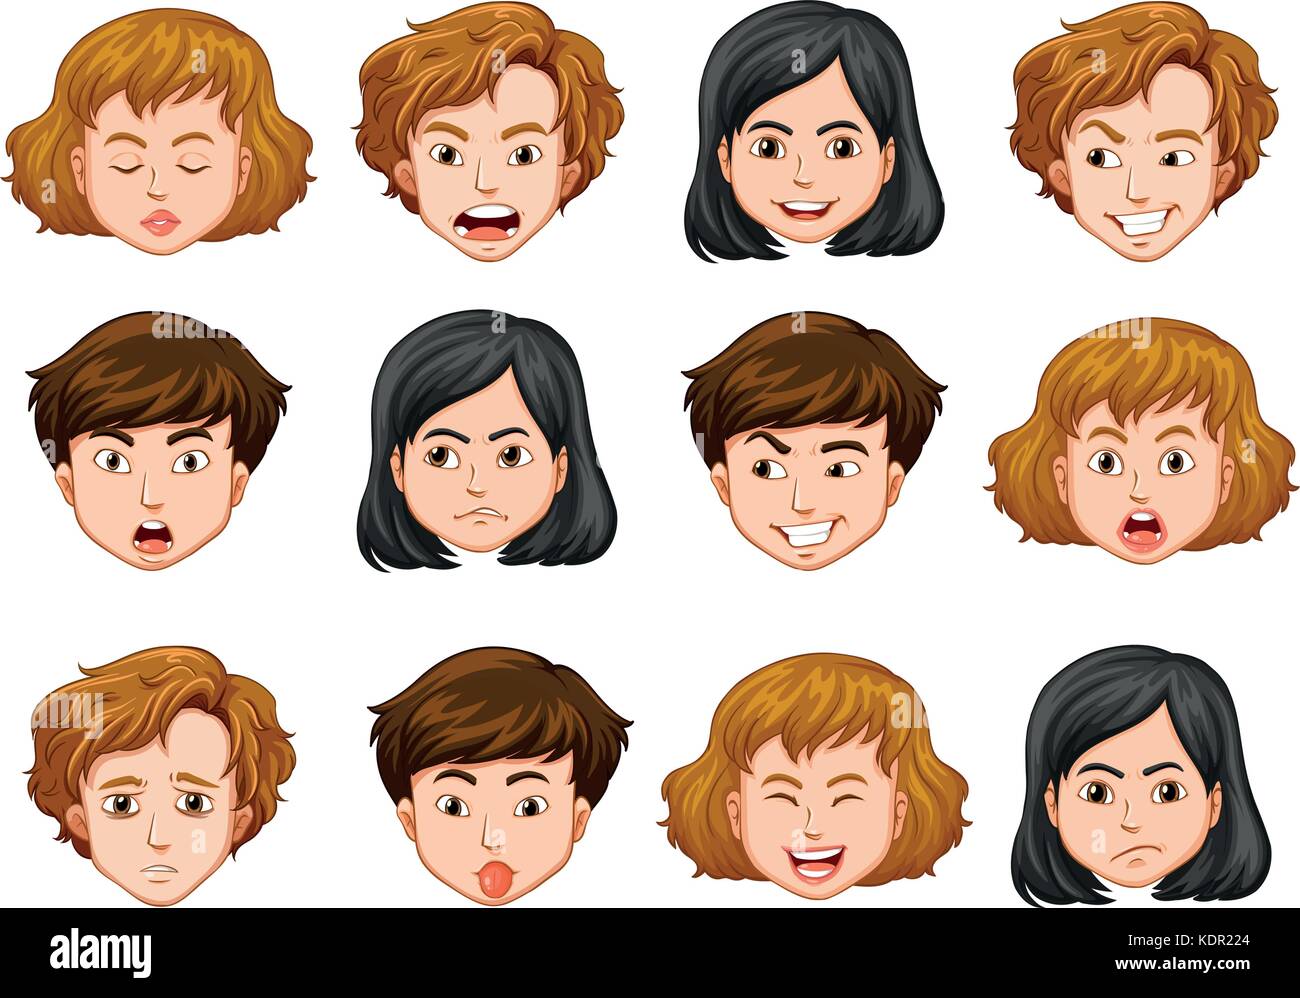 átomo Cardenal etc. Rostros humanos con diferentes emociones ilustración Imagen Vector de stock  - Alamy